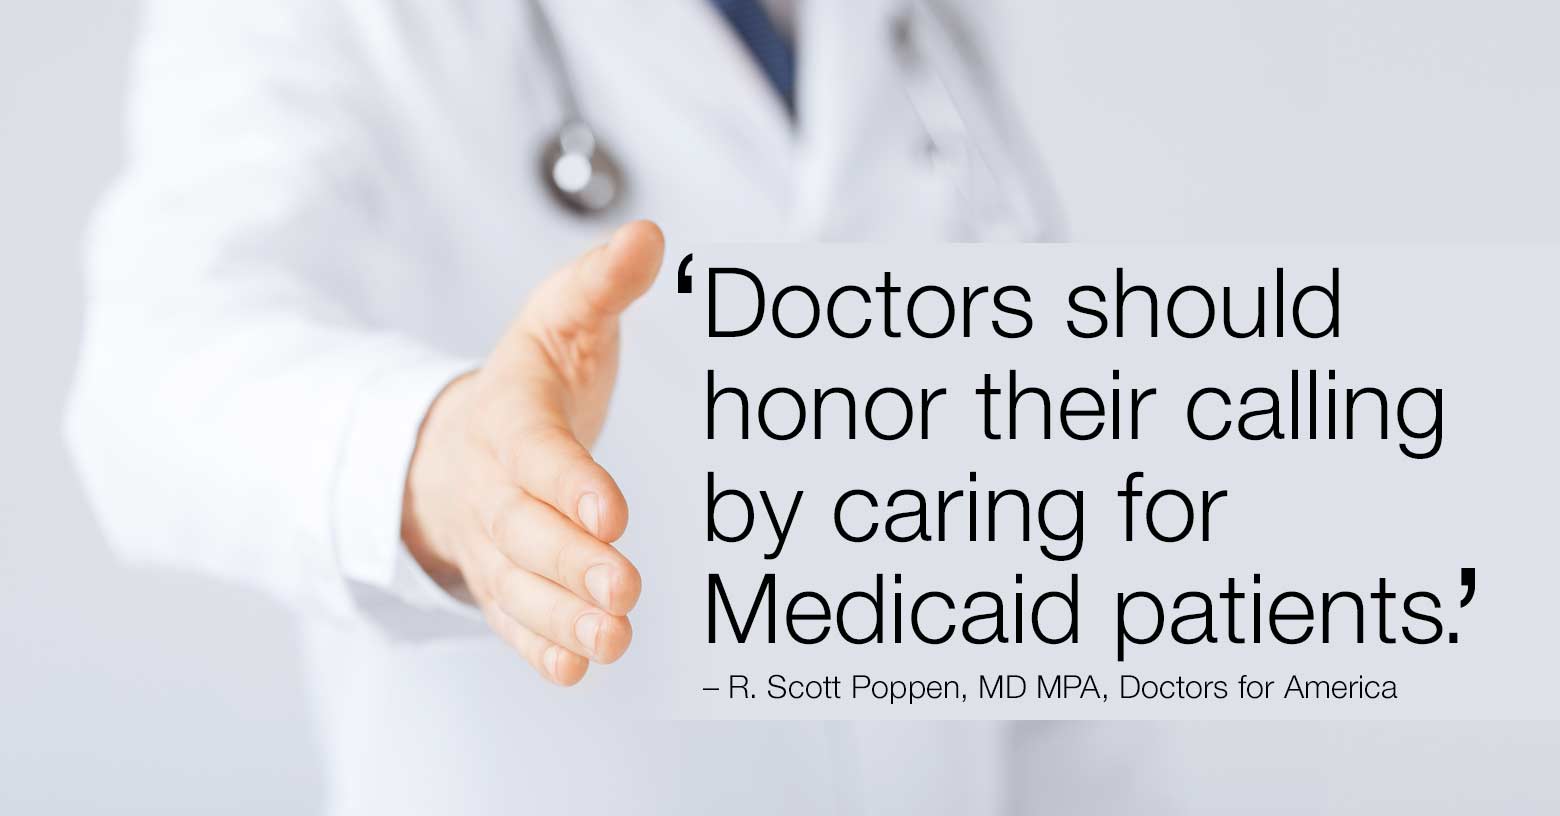 Medicaid patients deserve care.